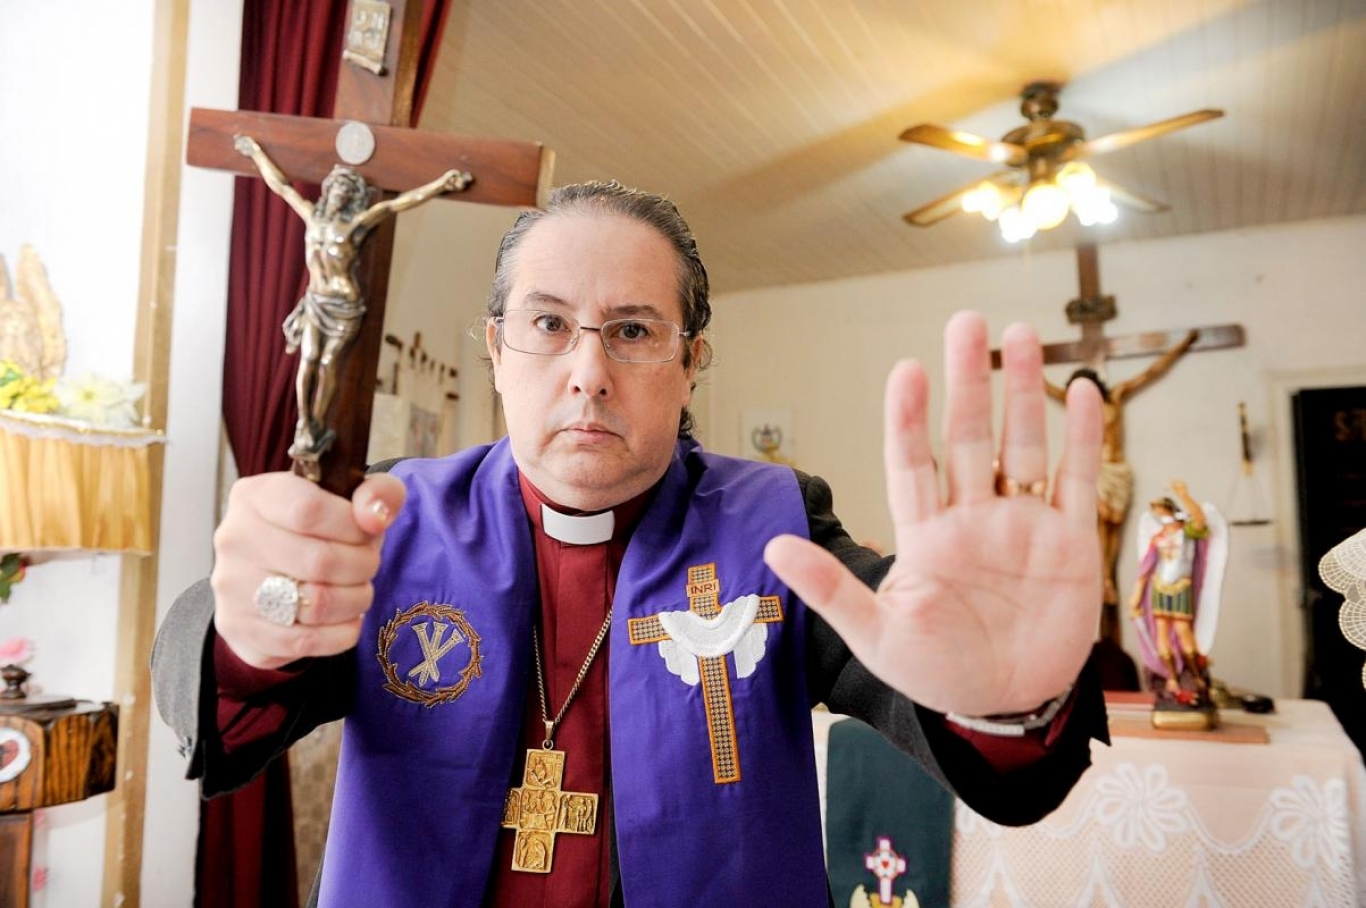 "Estoy en España para inaugurar la escuela de exorcistas de Europa", Obispo Manuel Acuña.